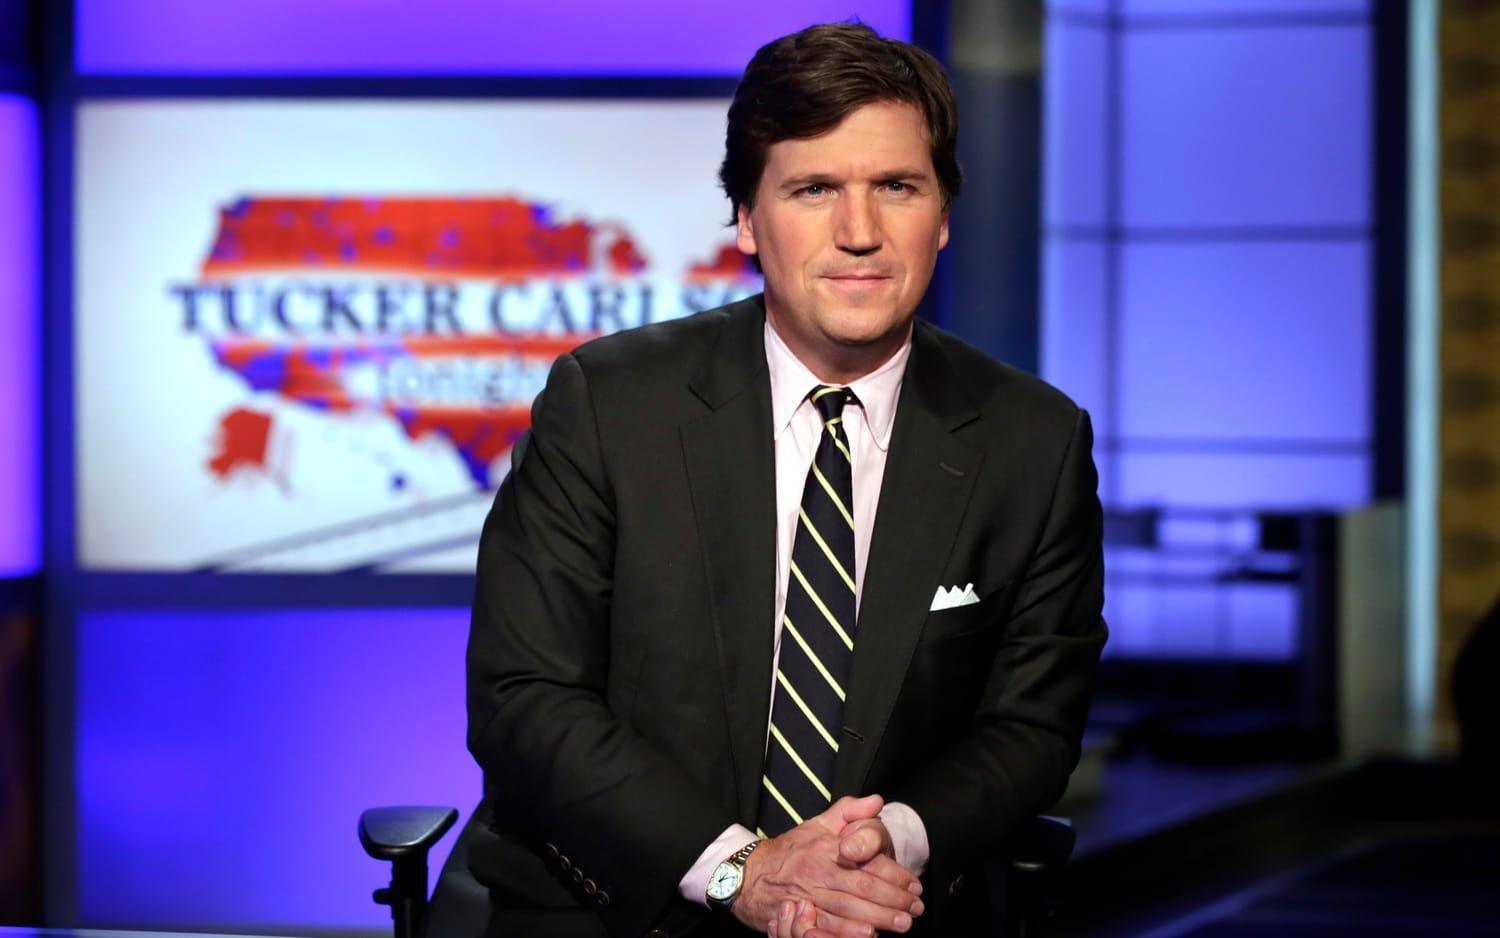 Tucker Carlsons program på Fox går ofta ut på att i kraftiga ordalag smutskasta det demokratiska partiet och motståndare till Donald Trump.